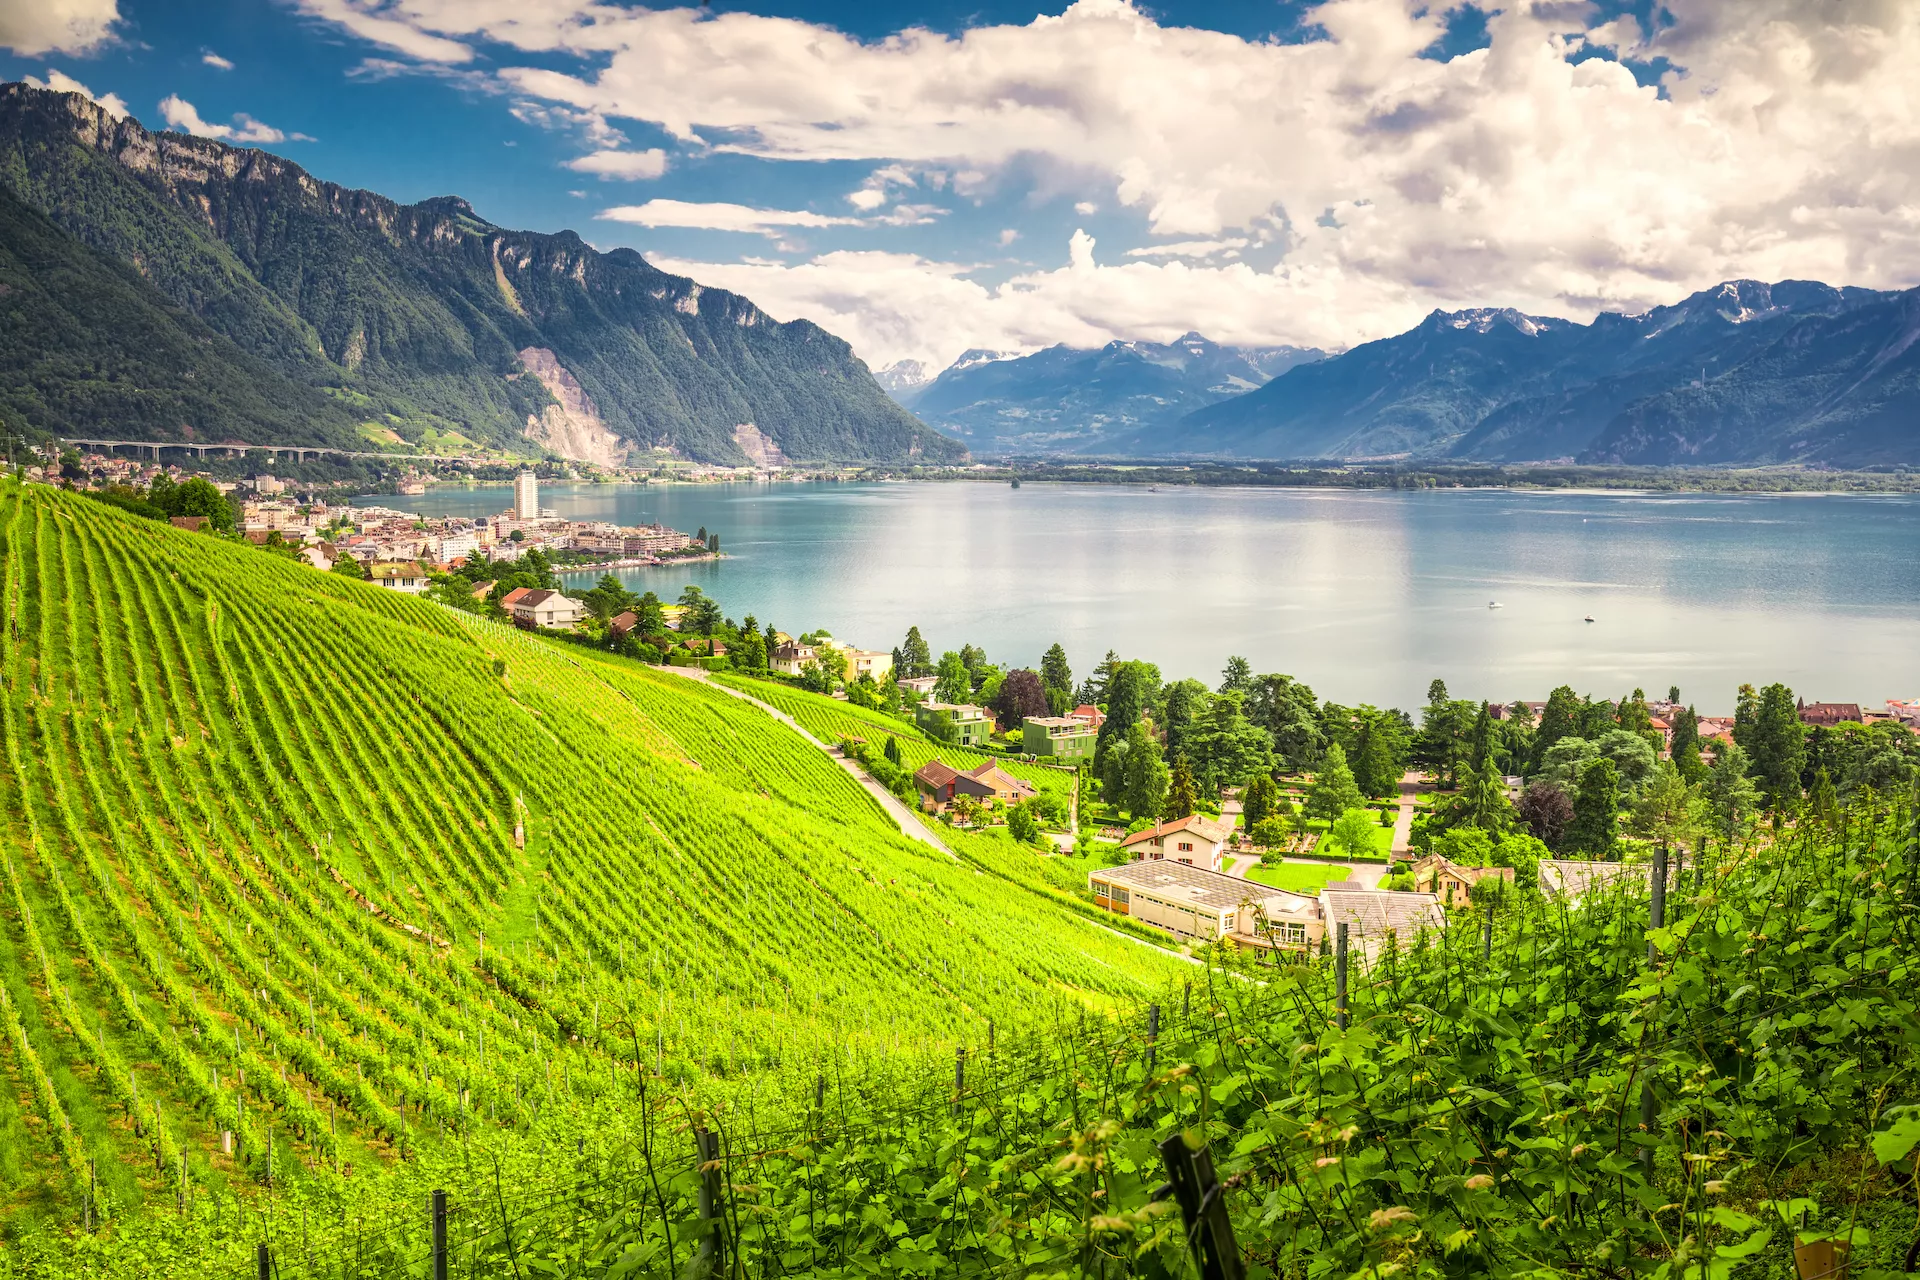 La città di Montreux con le Alpi svizzere, il lago di Ginevra e i vigneti della regione del Lavaux